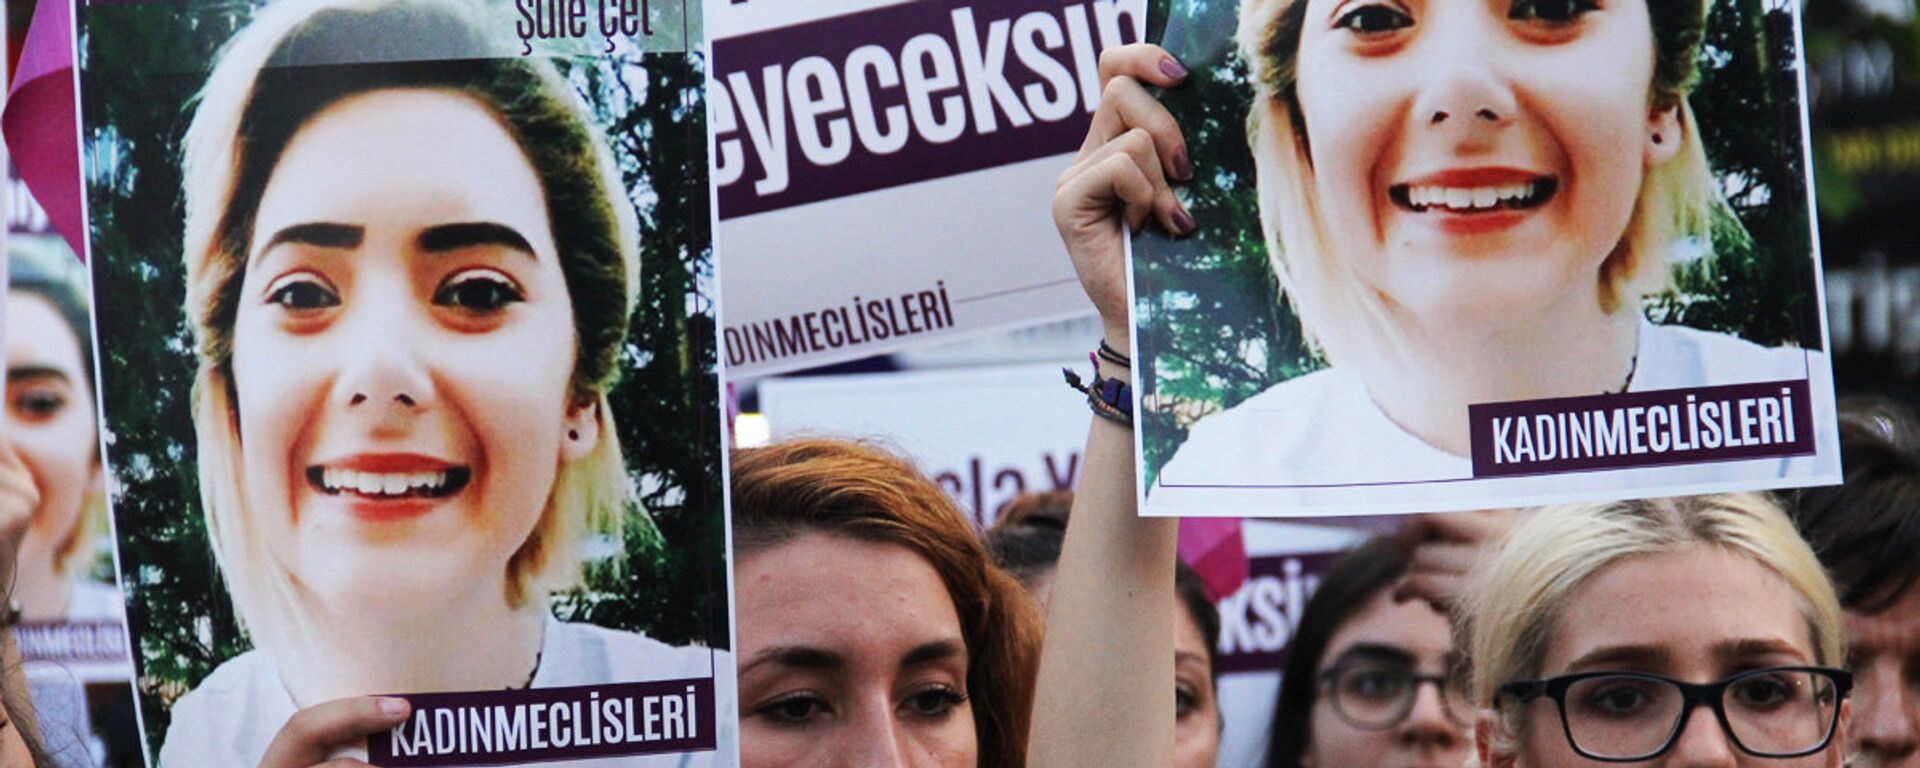 Şule Çet’in avukatı: Boğularak öldürülmüş olabilir - Sputnik Türkiye, 1920, 05.01.2022